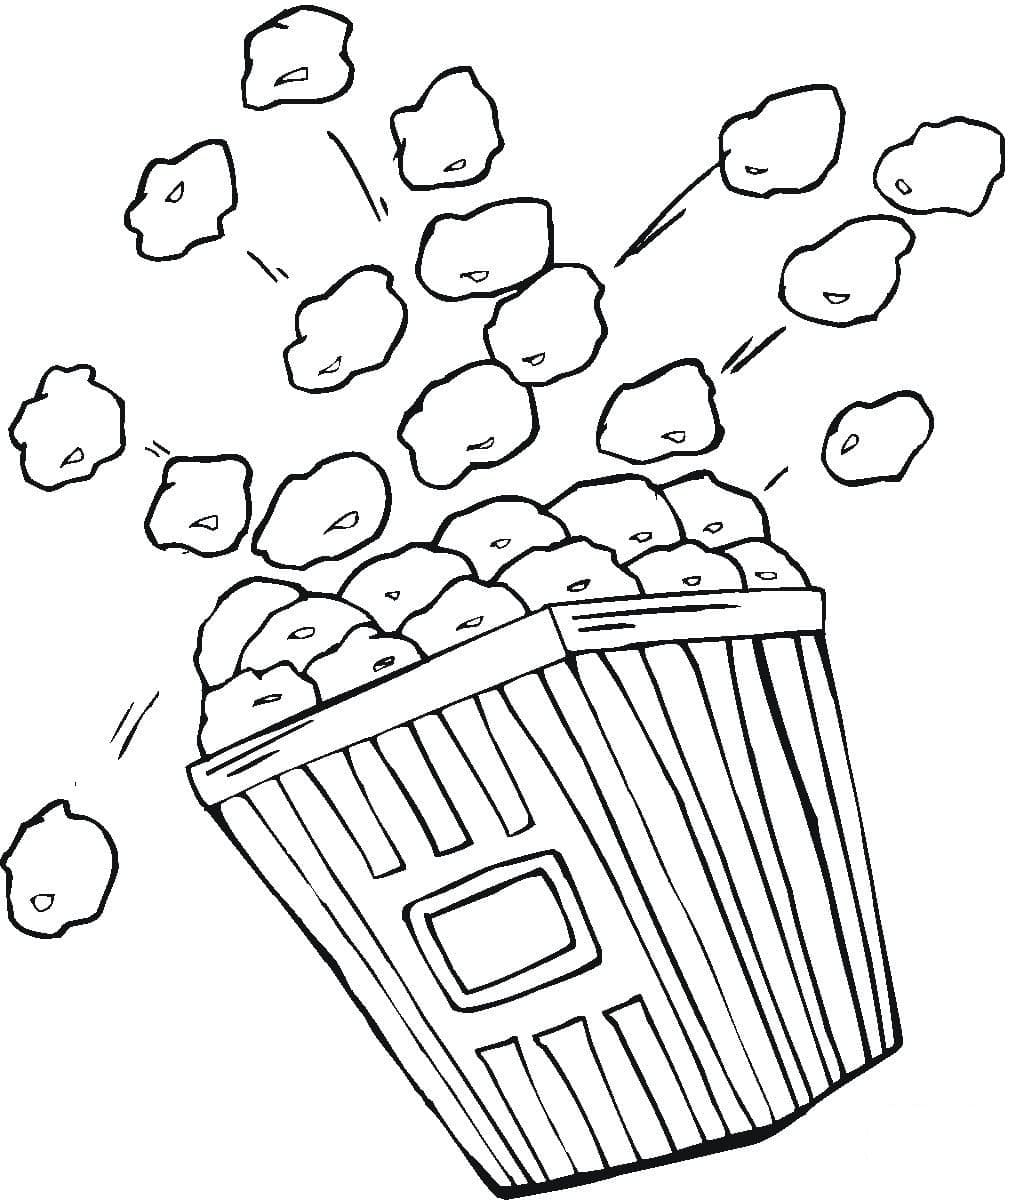 Cartoon popcorn bag coloring page